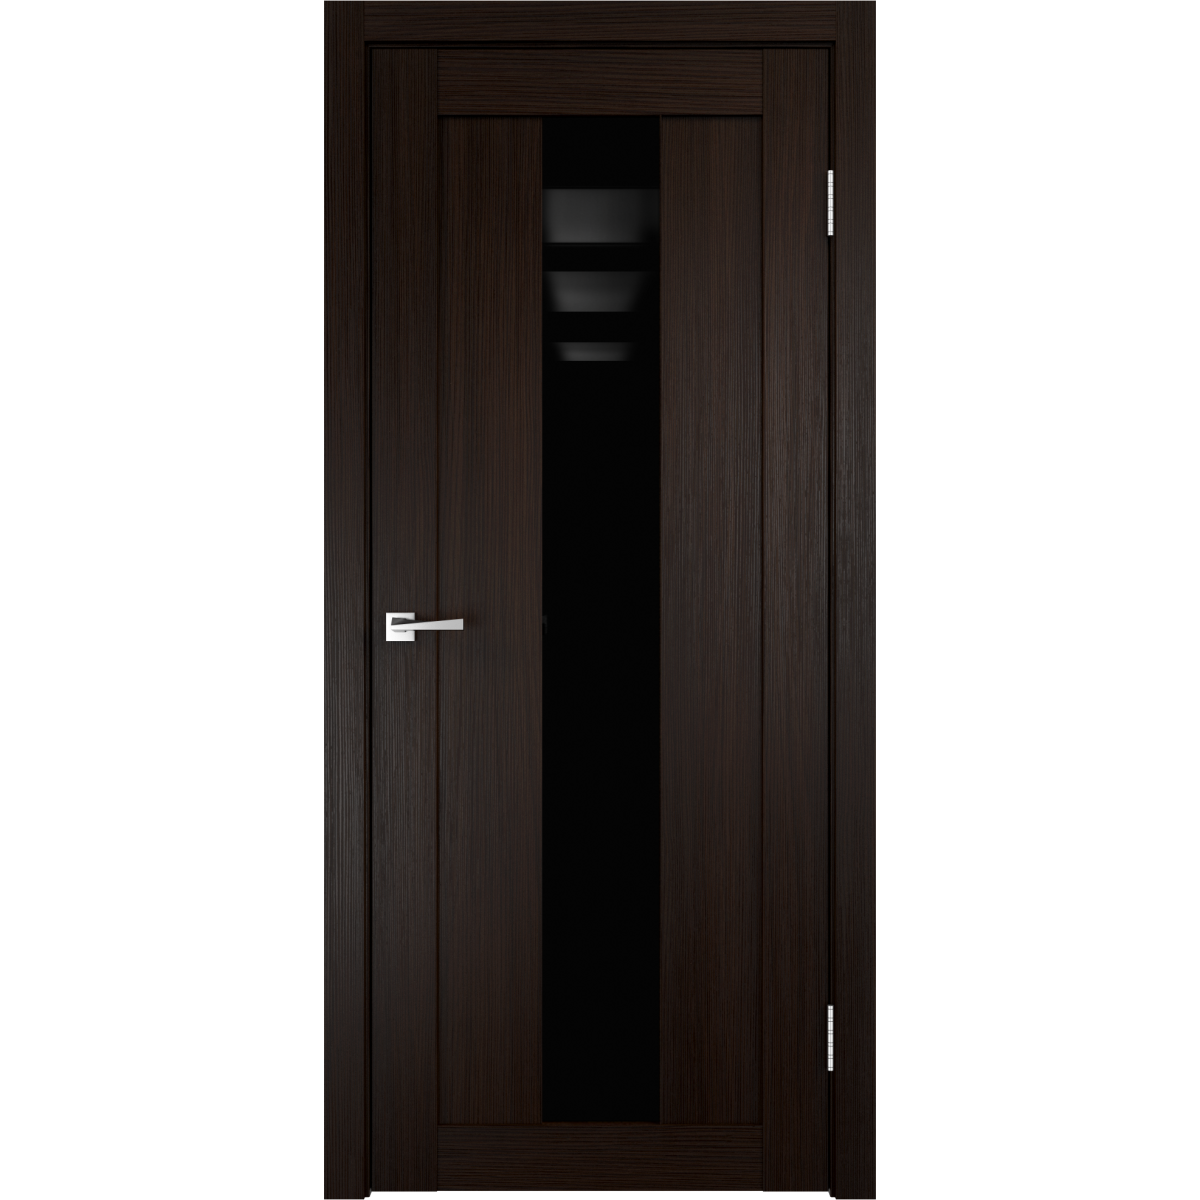 Дверь межкомнатная остеклённая Фортуна 90x200 см, ПВХ, цвет венге